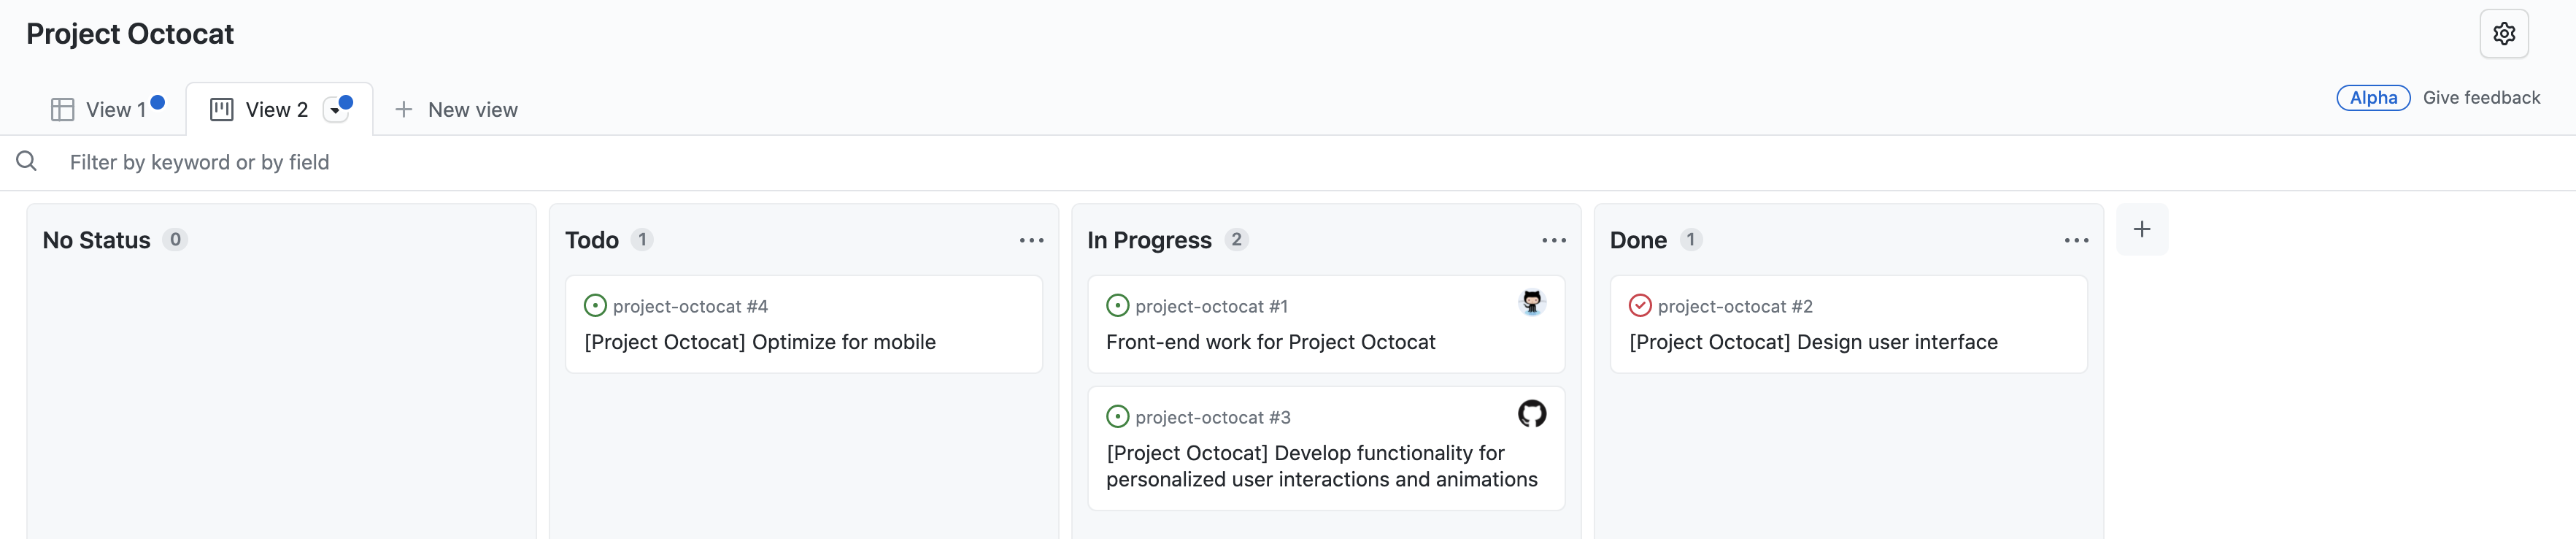 Captura de tela da exibição do quadro do projeto "Projeto Octocat", com problemas organizados em colunas para "Sem status", "Pendente", "Em andamento" e "Concluído".